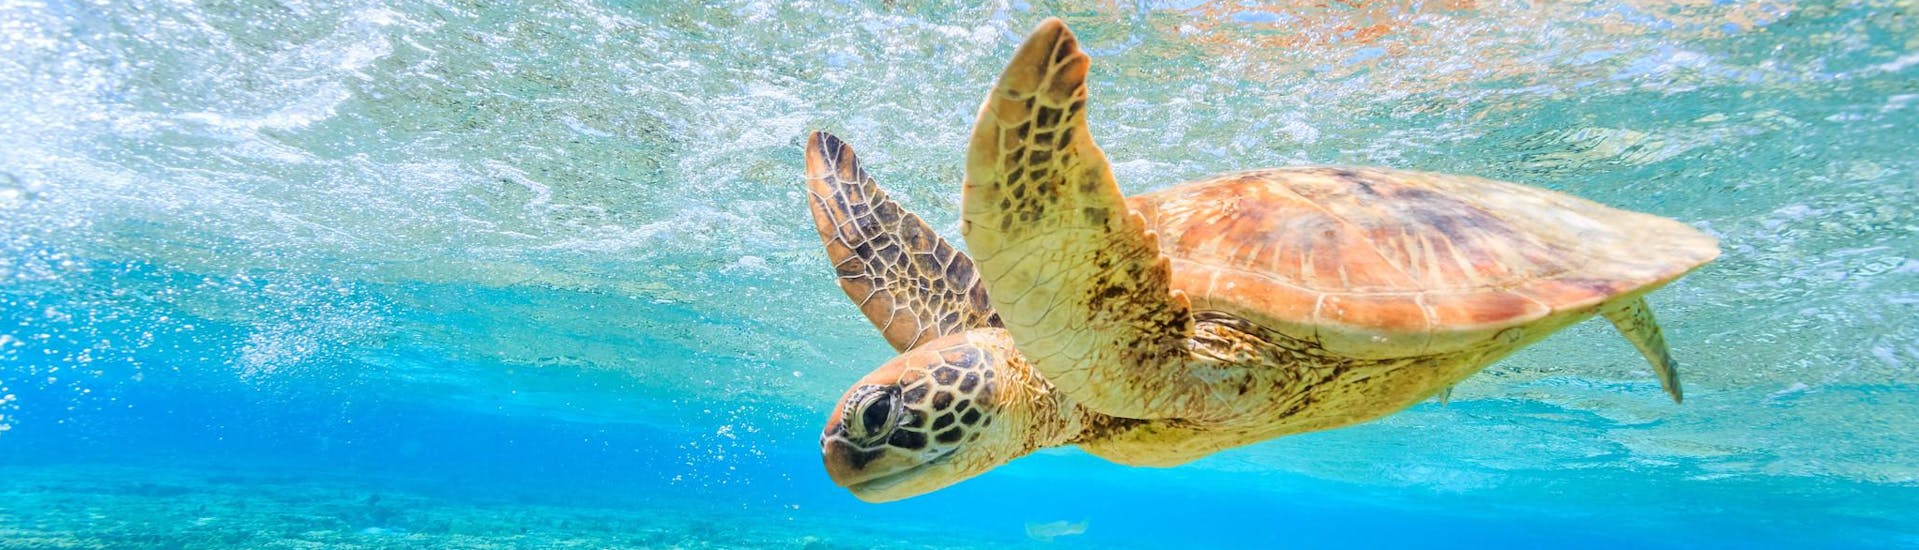 Une tortue aperçue nageant au-dessus des récifs